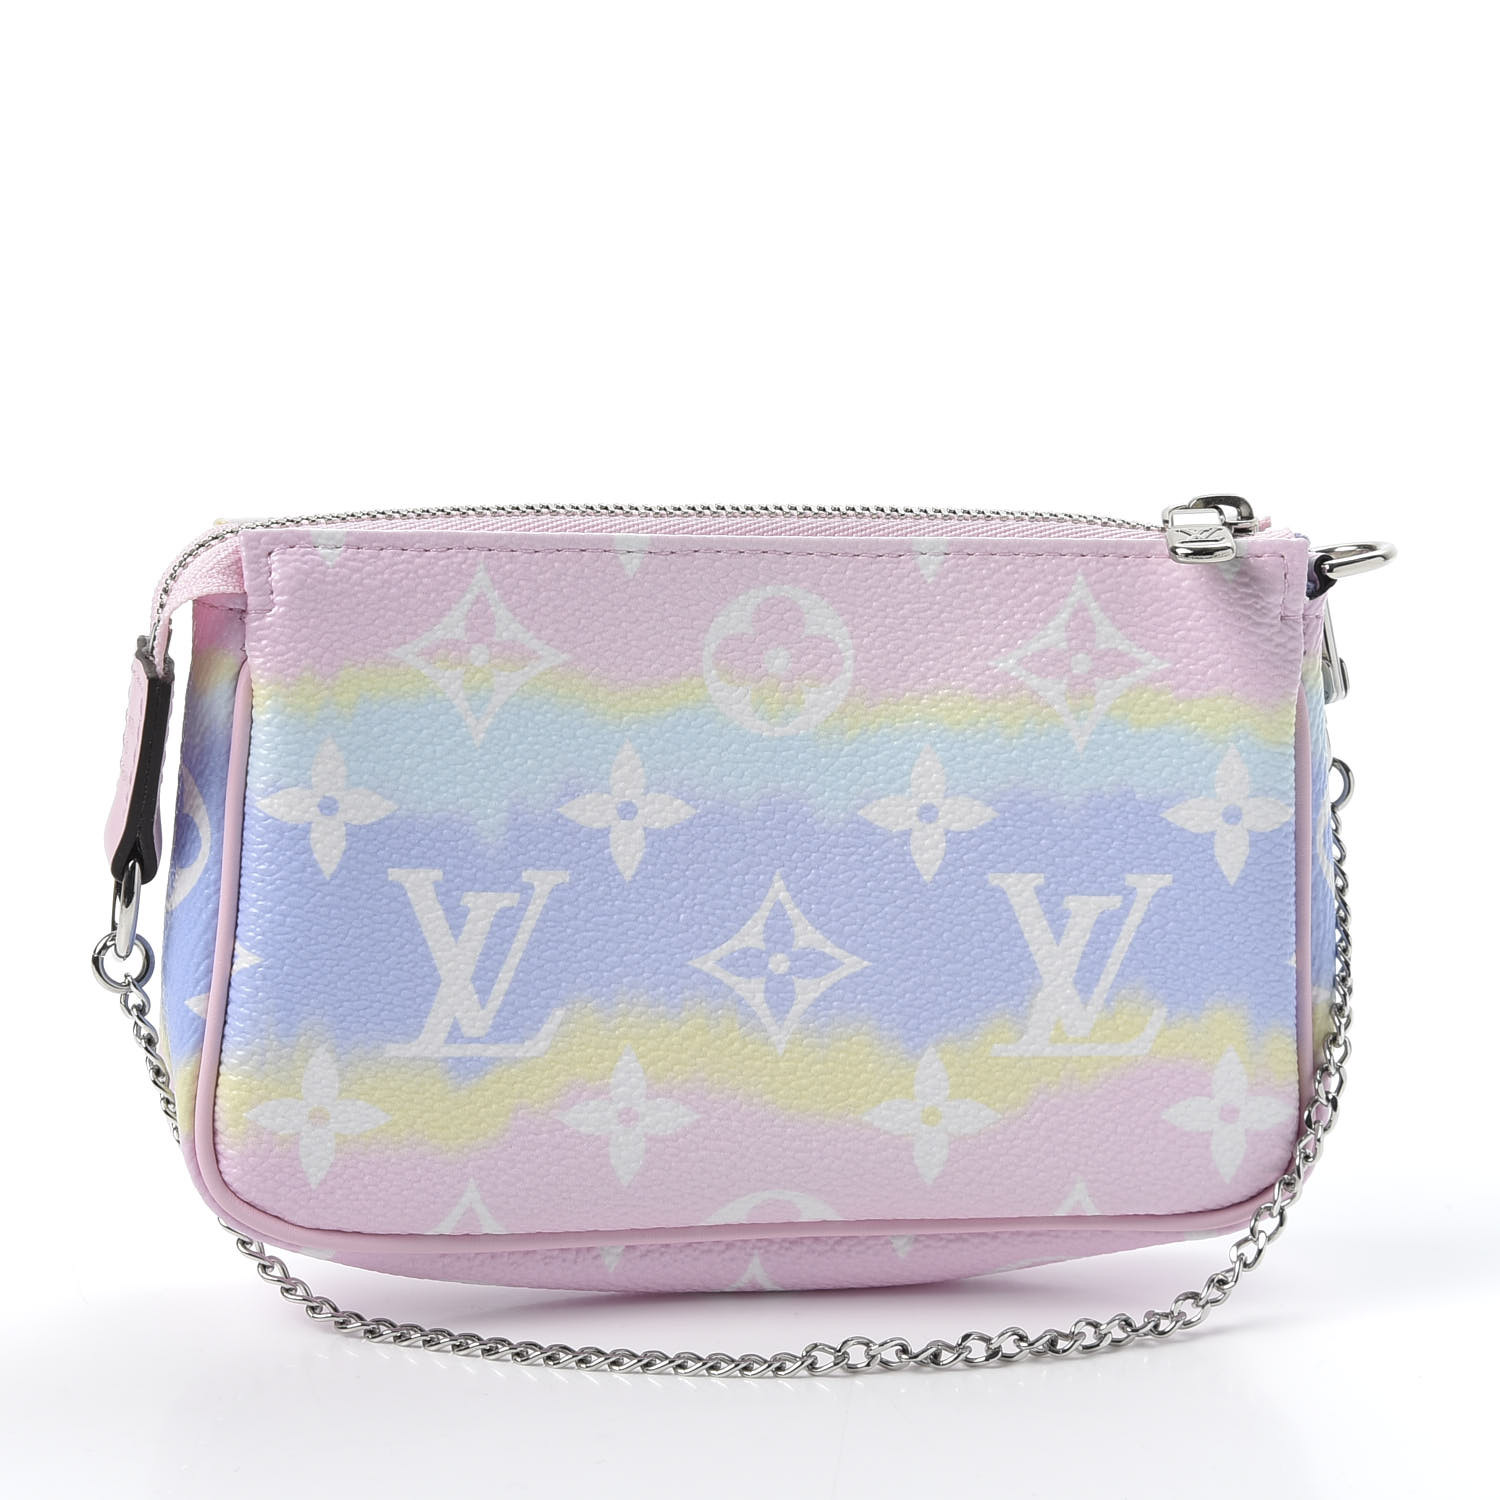 LOUIS VUITTON Pouch Bag Mini Pochette Accessoires LV Escale Pink M69269  auth